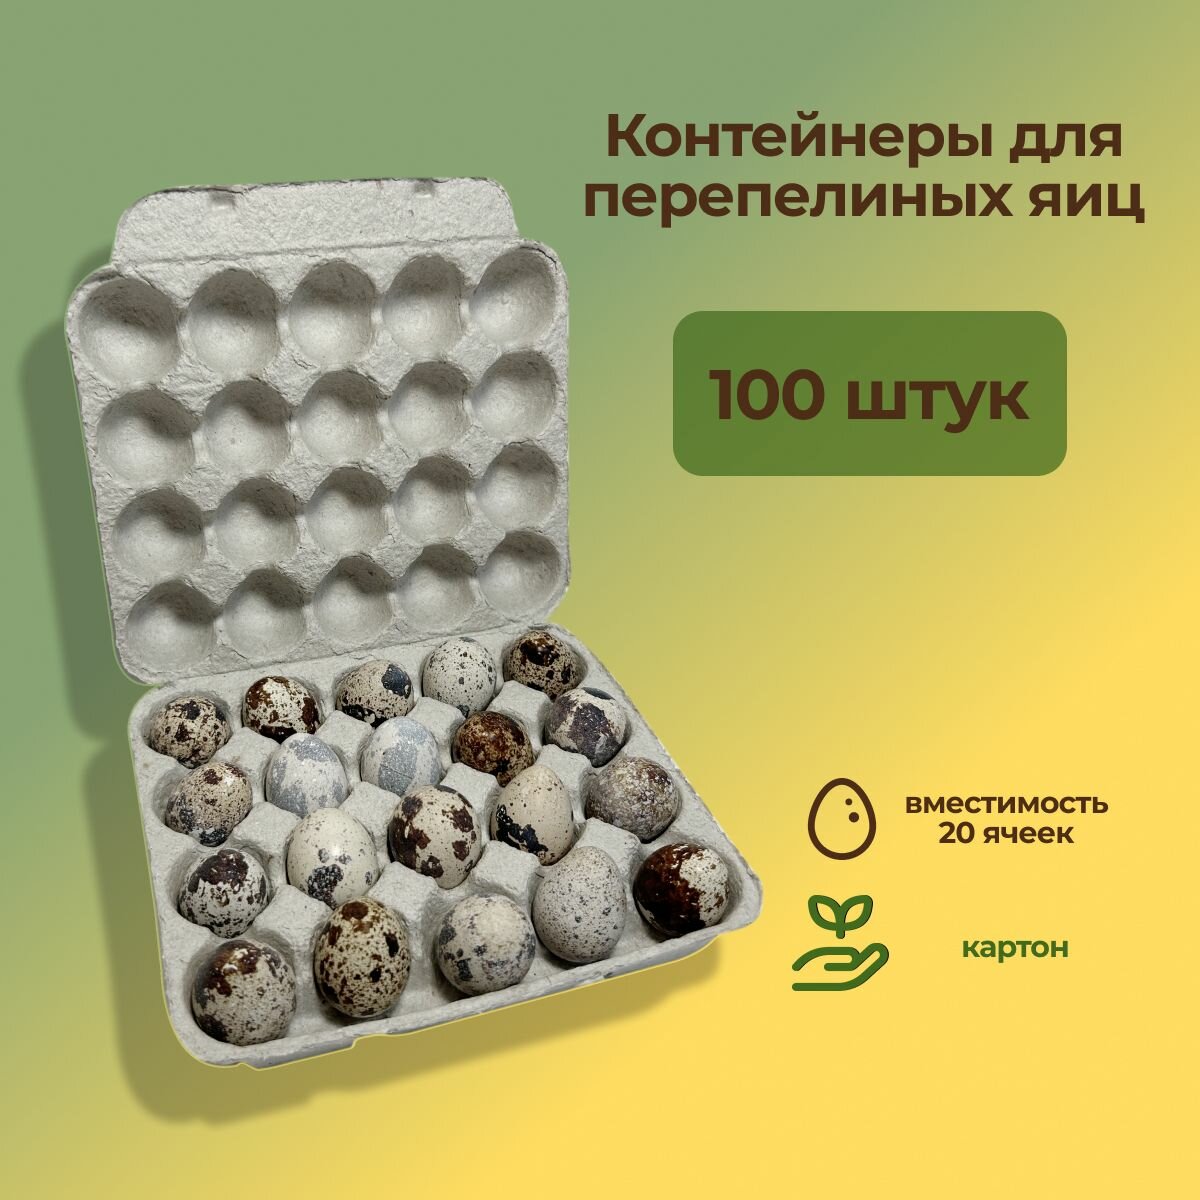 Упаковка из картона (контейнер) для перепелиных яиц 100 шт (по 20 ячеек)